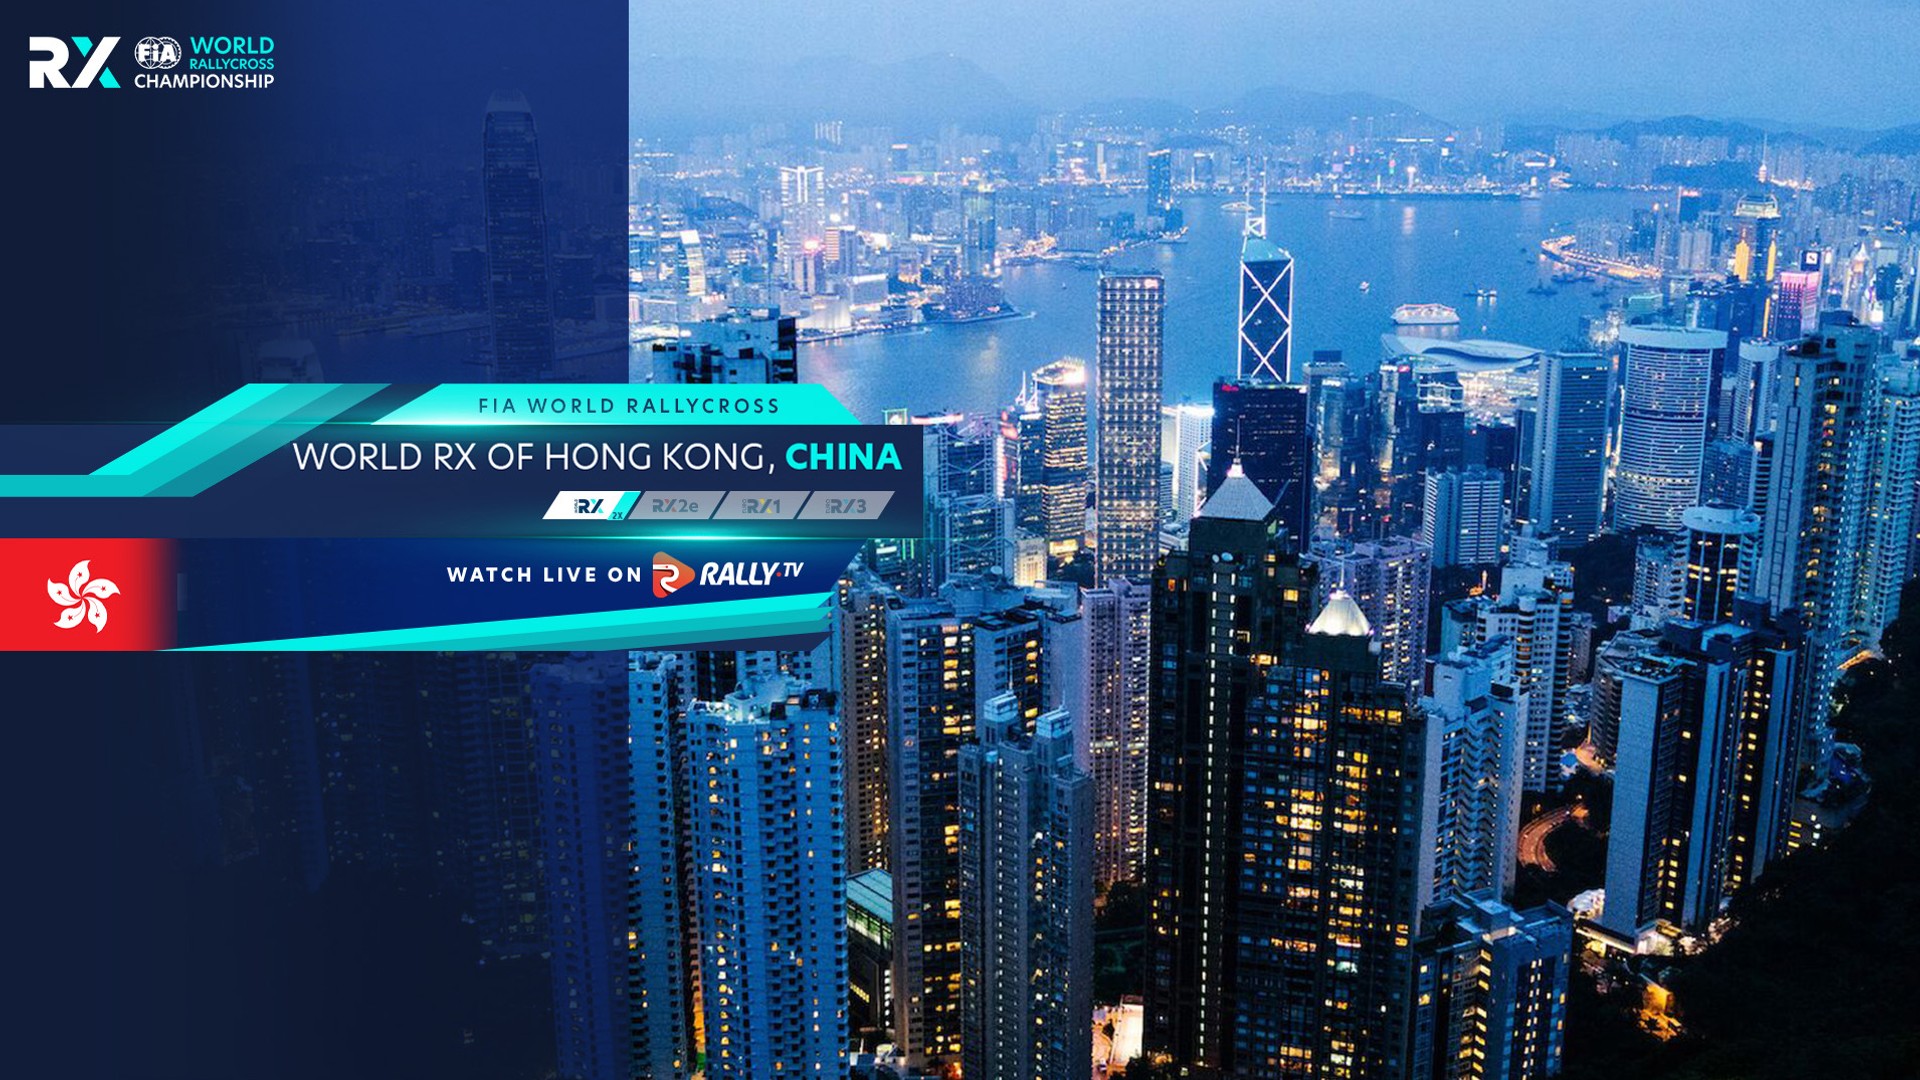 World RX of Hong Kong, China 2